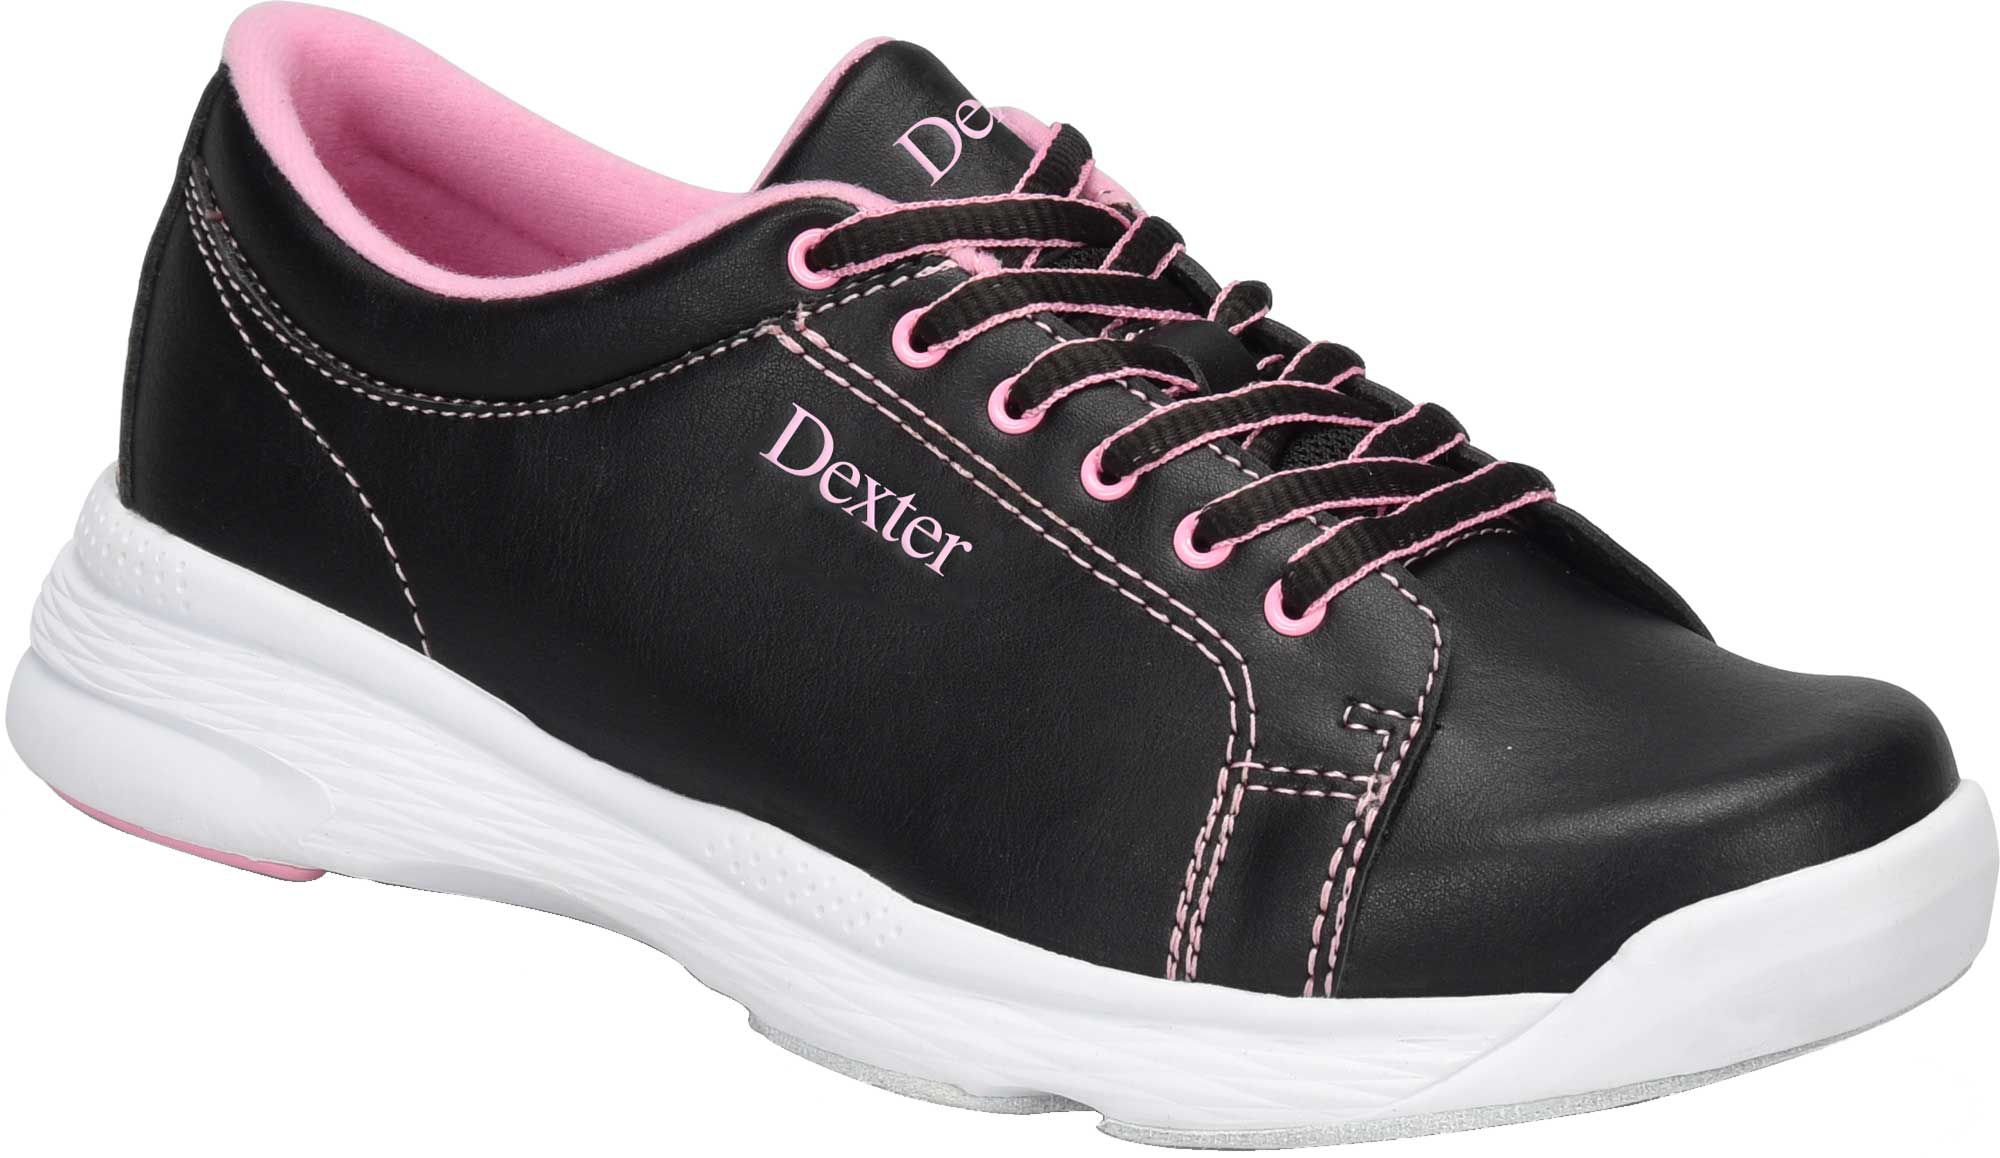 women's bowling shoes size 12